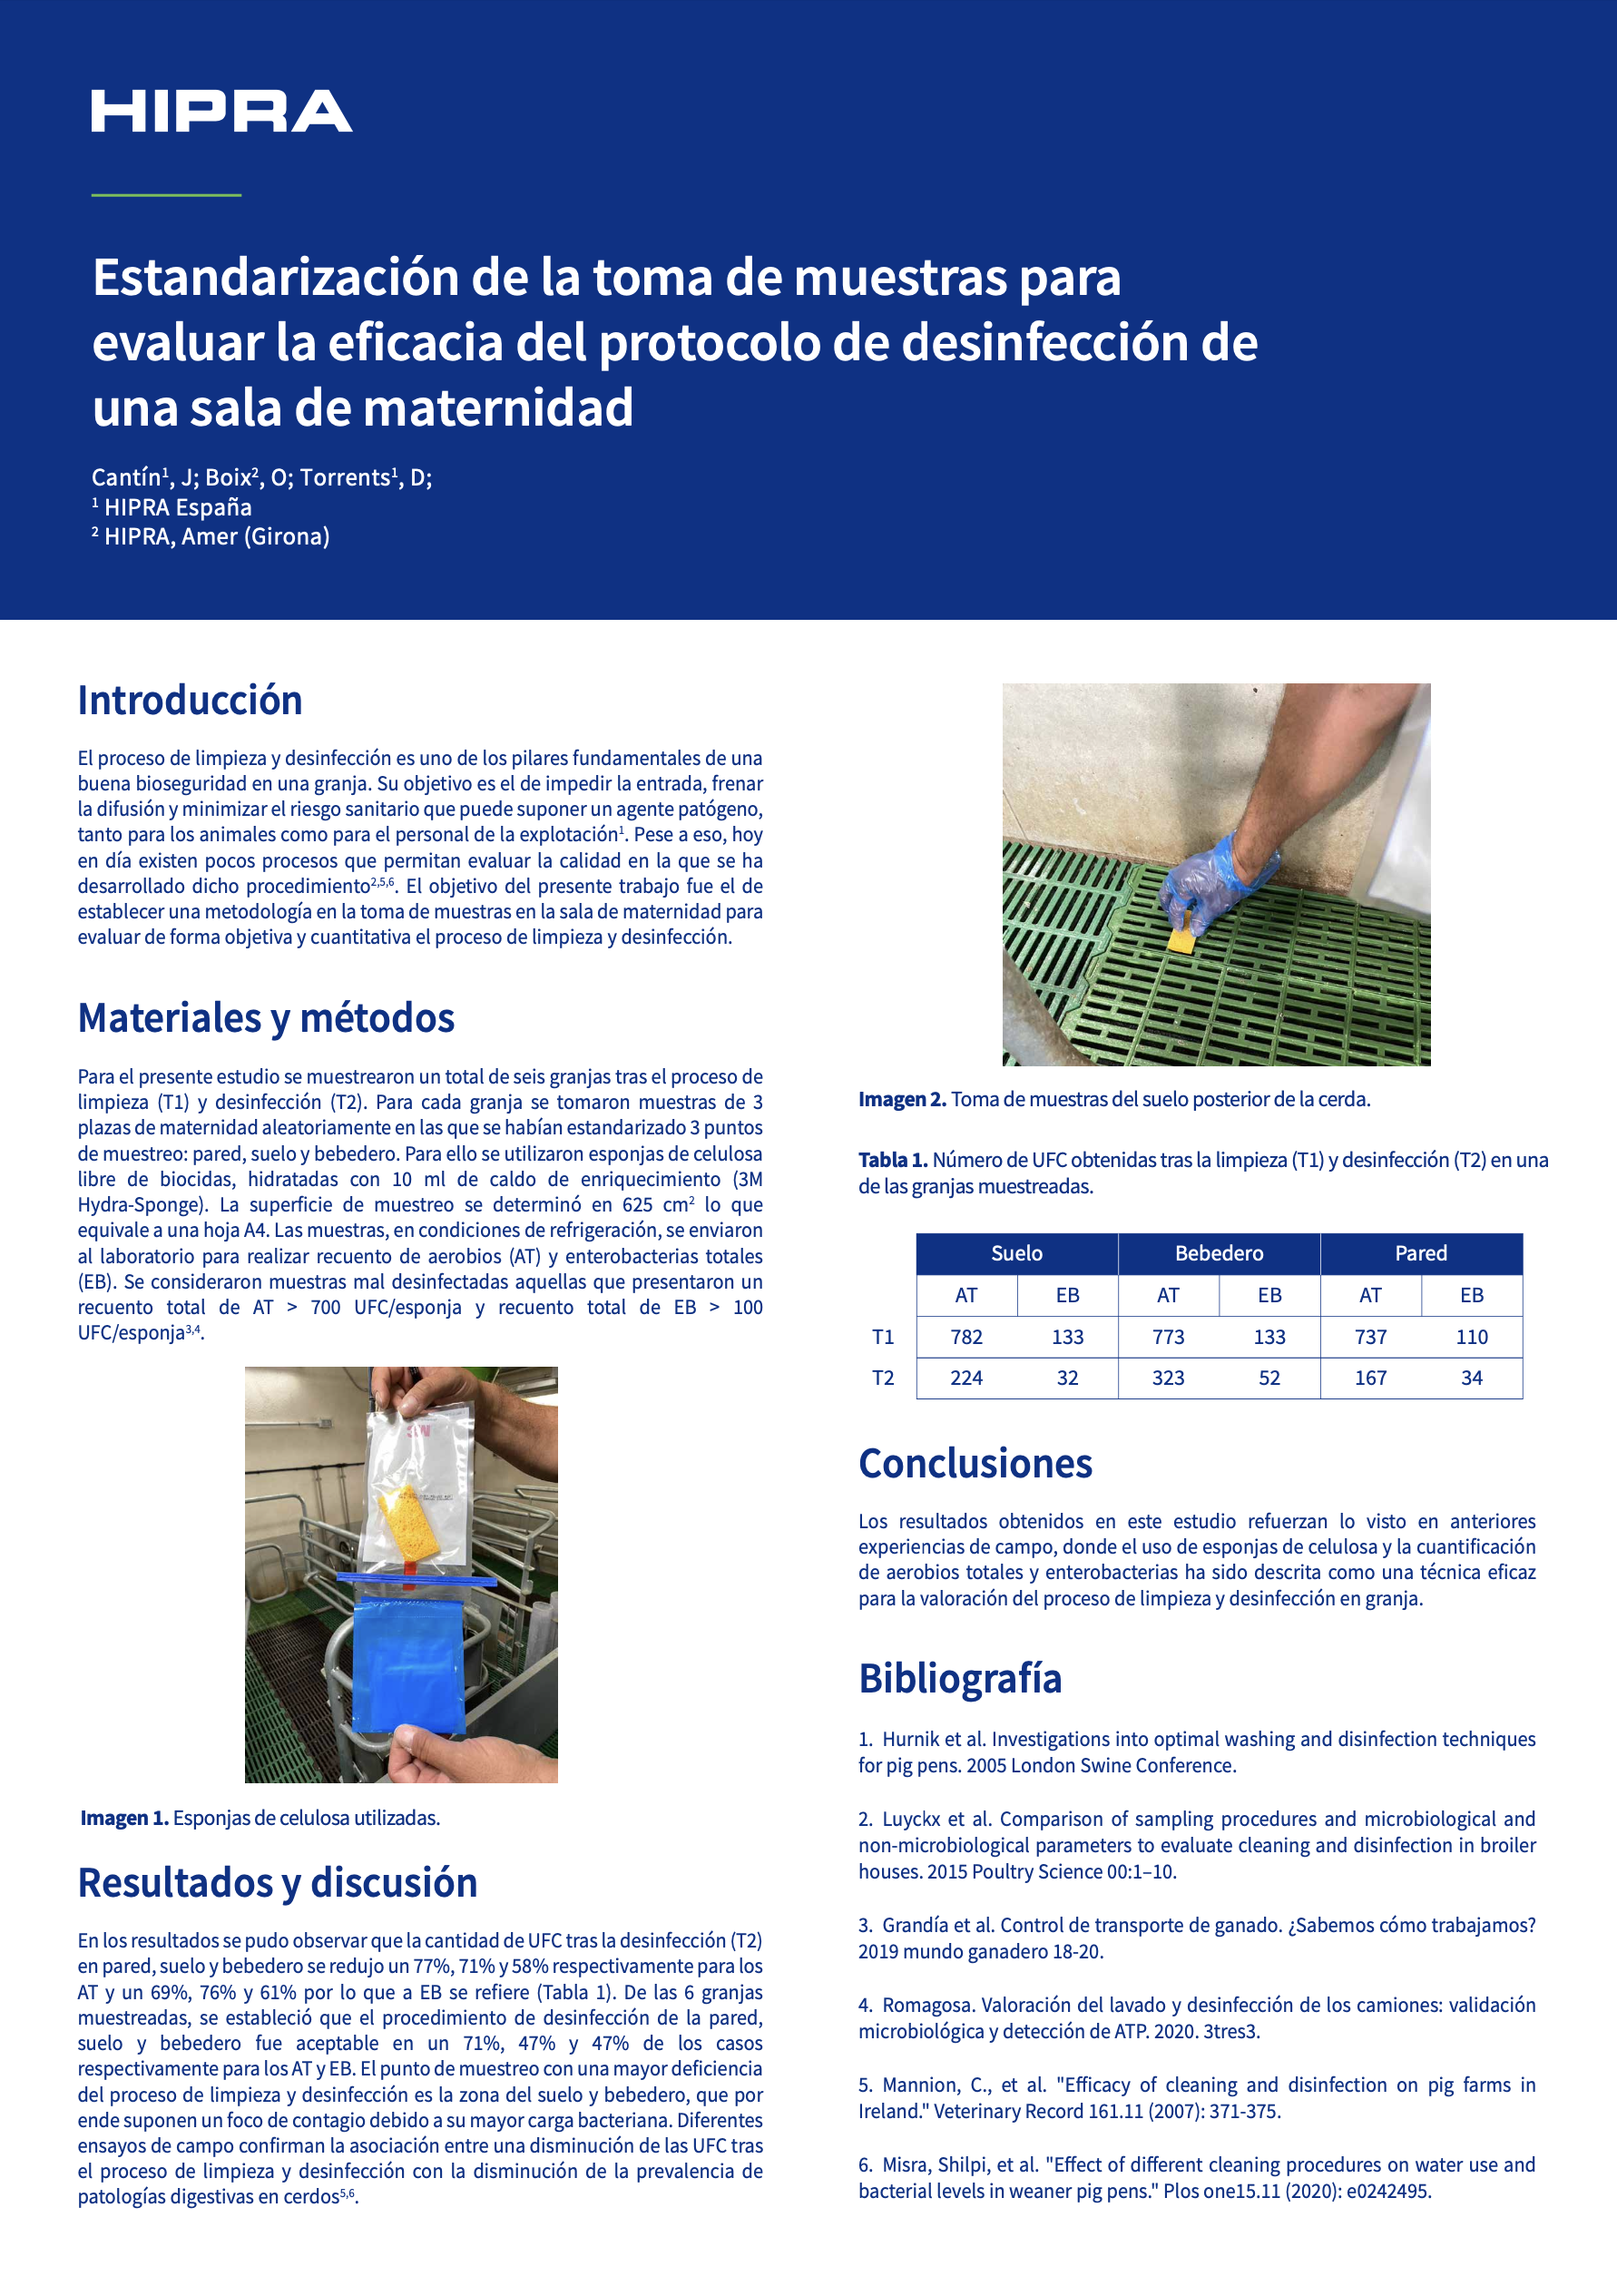 Estandarización de la toma de muestras para evaluar la eficacia del protocolo de desinfección de una sala de maternidad, poster